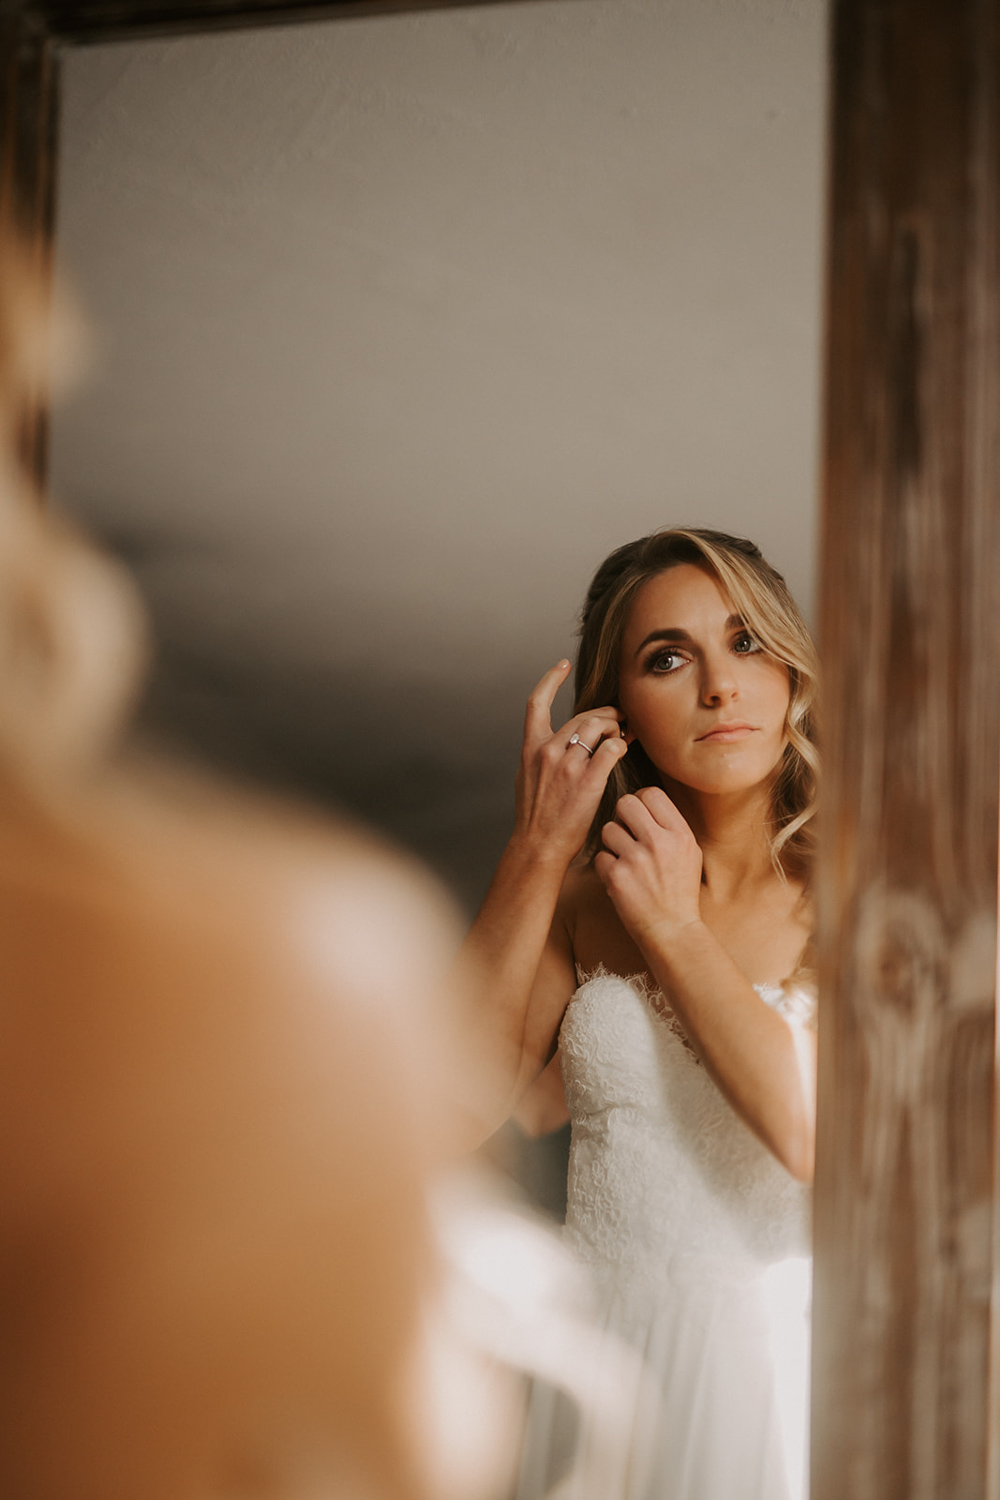 bride putting on earrings in mirror